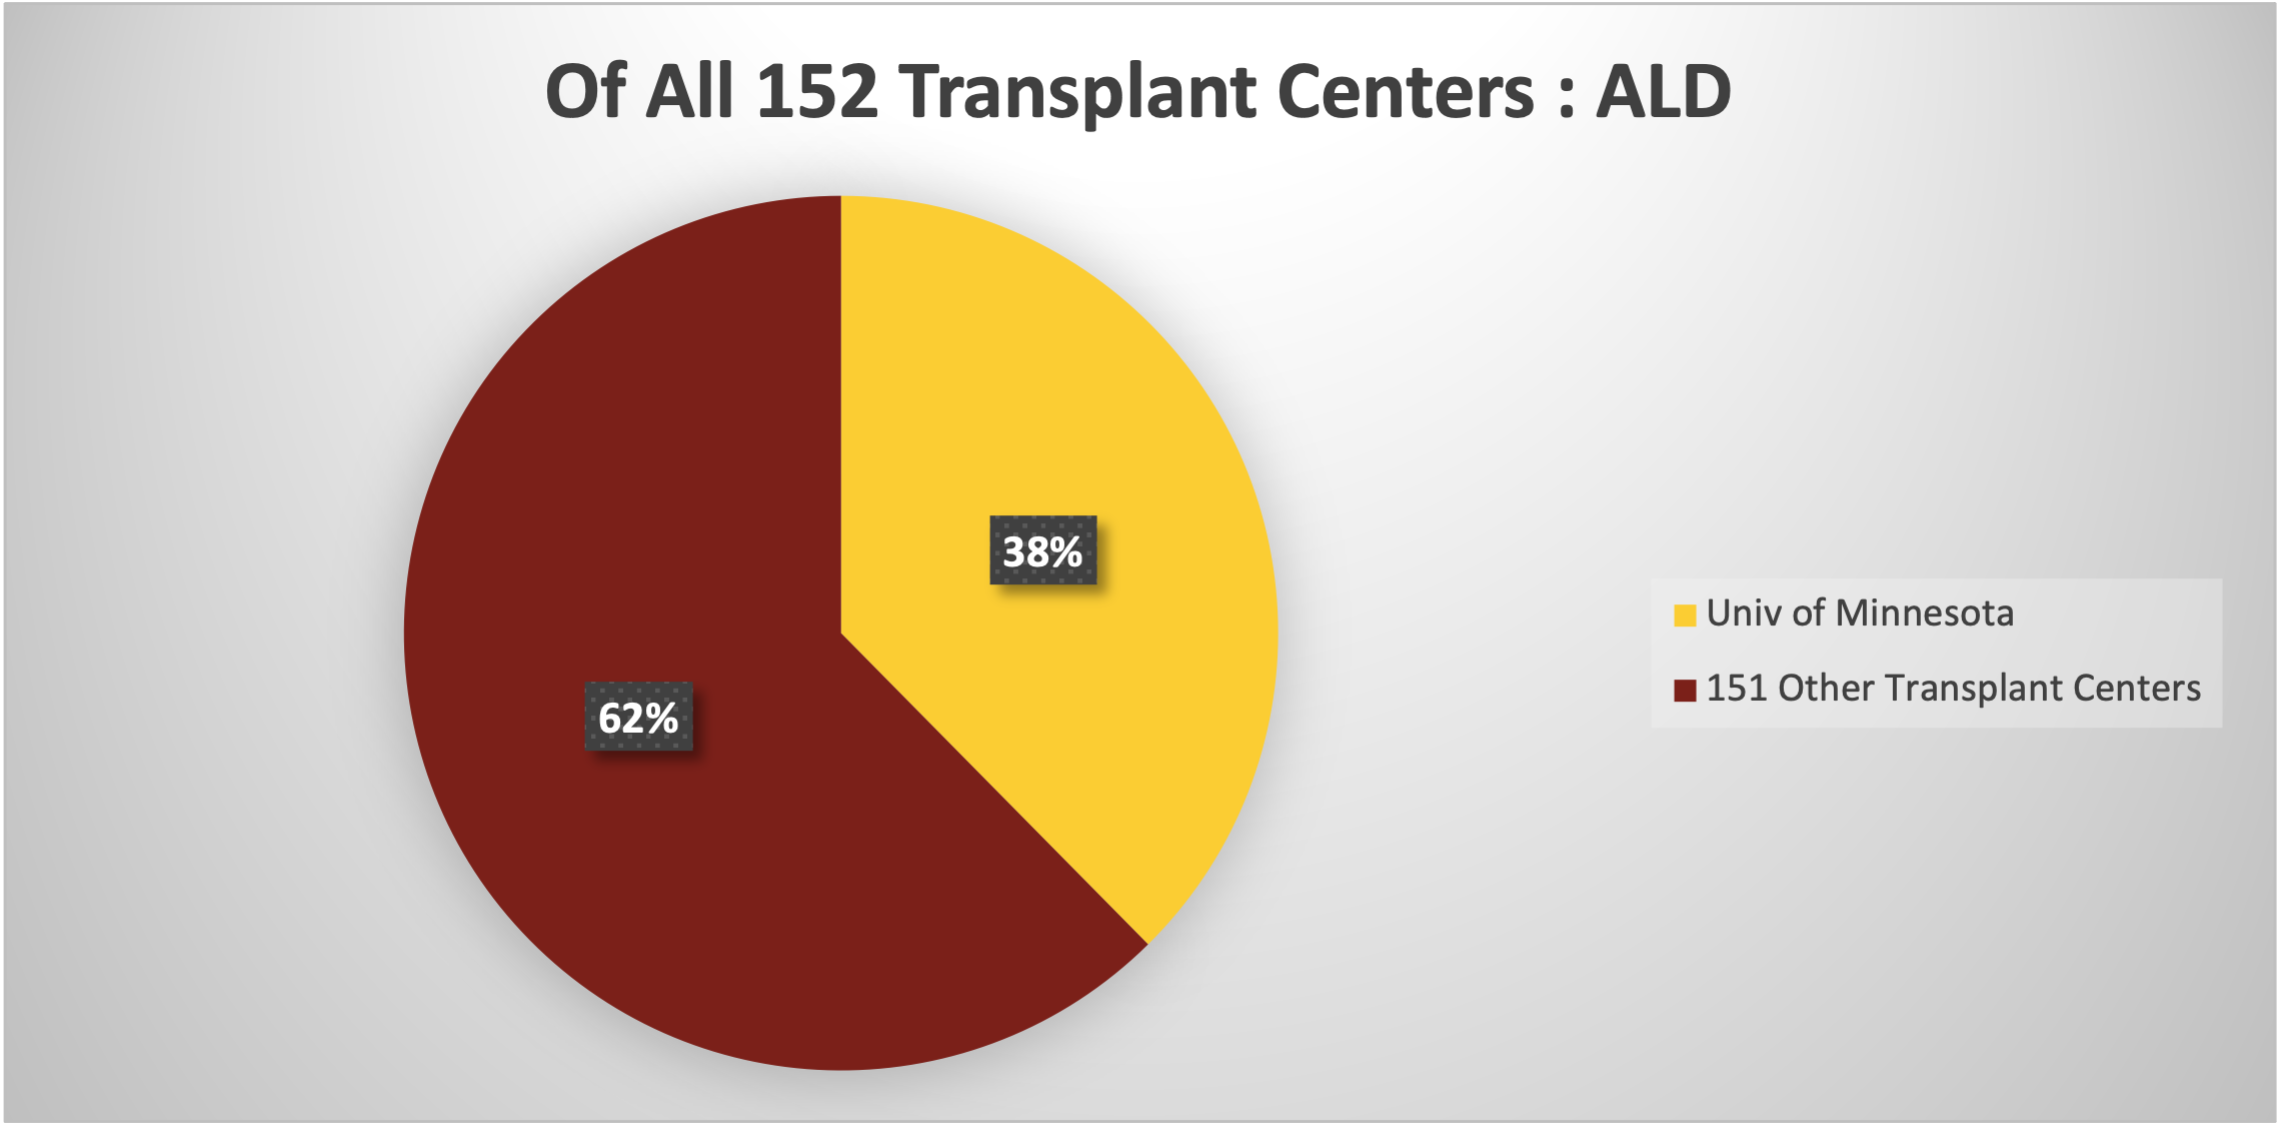 UMN v Other Transplant Centers - ALD